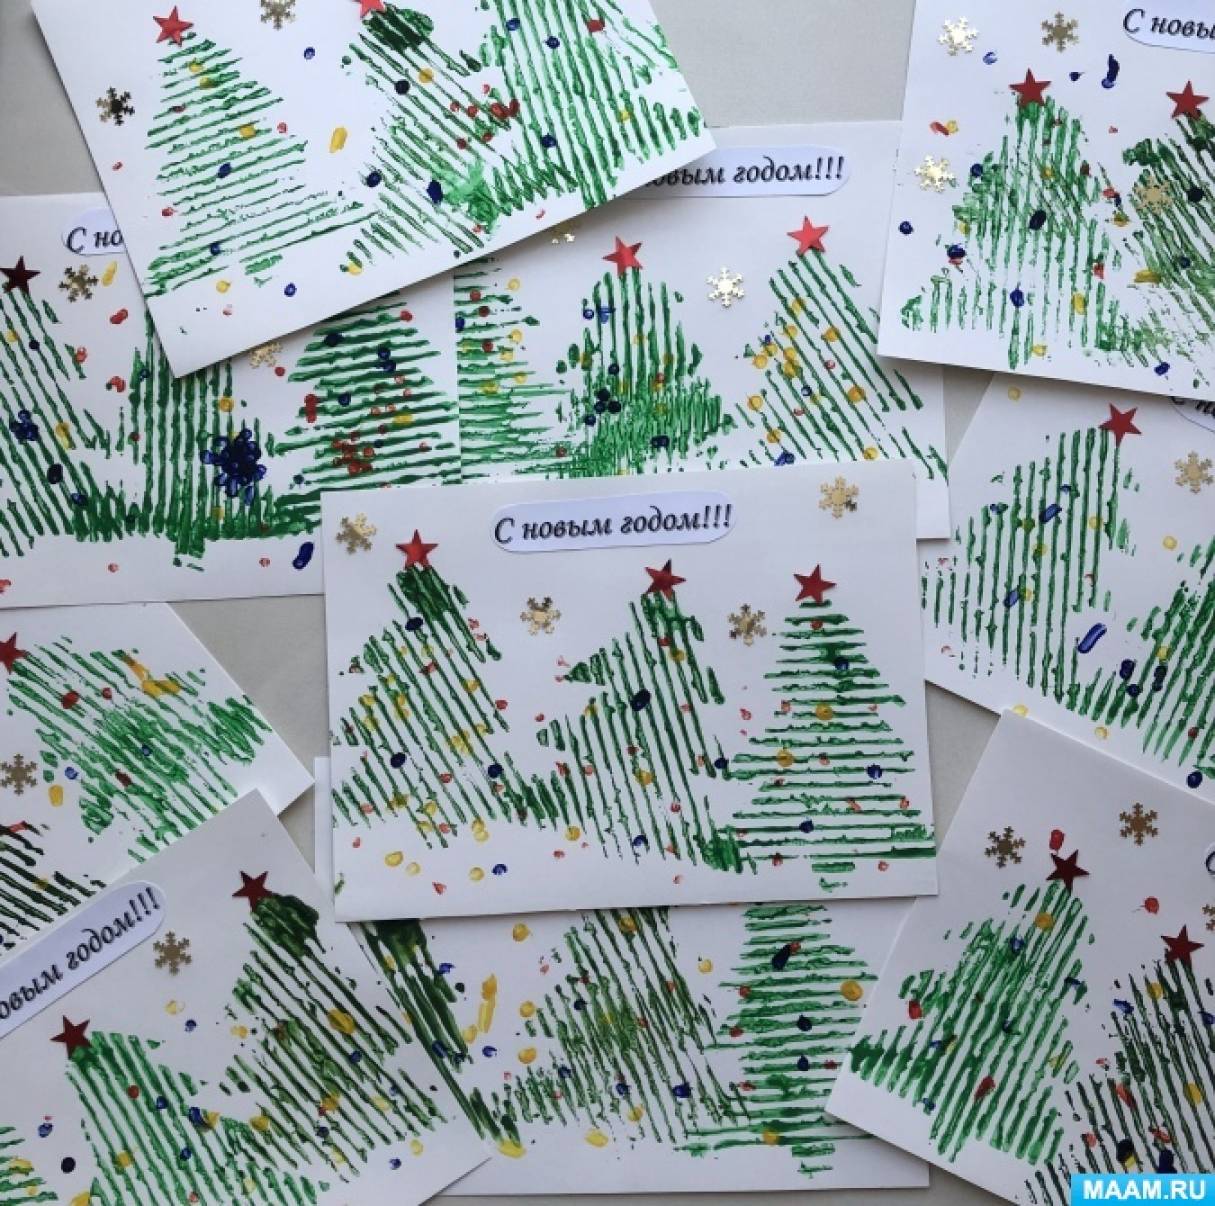 Мастер-класс по изготовлению новогодней открытки в технике отпечатка с детьми младшего дошкольного возраста